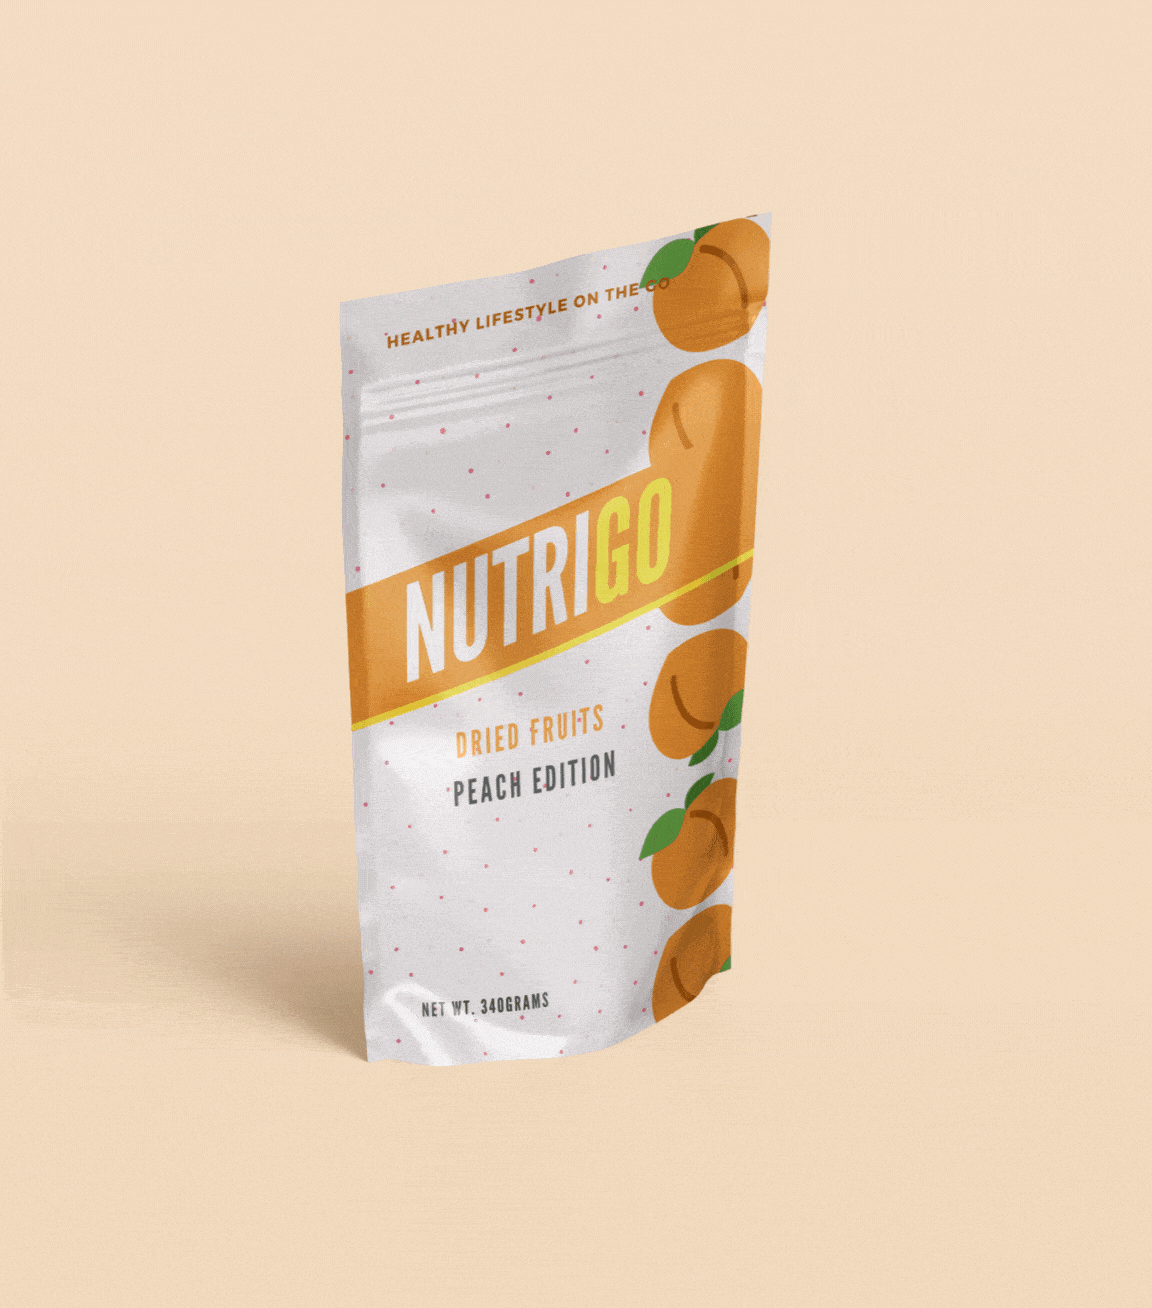 NutriGO food packaging design